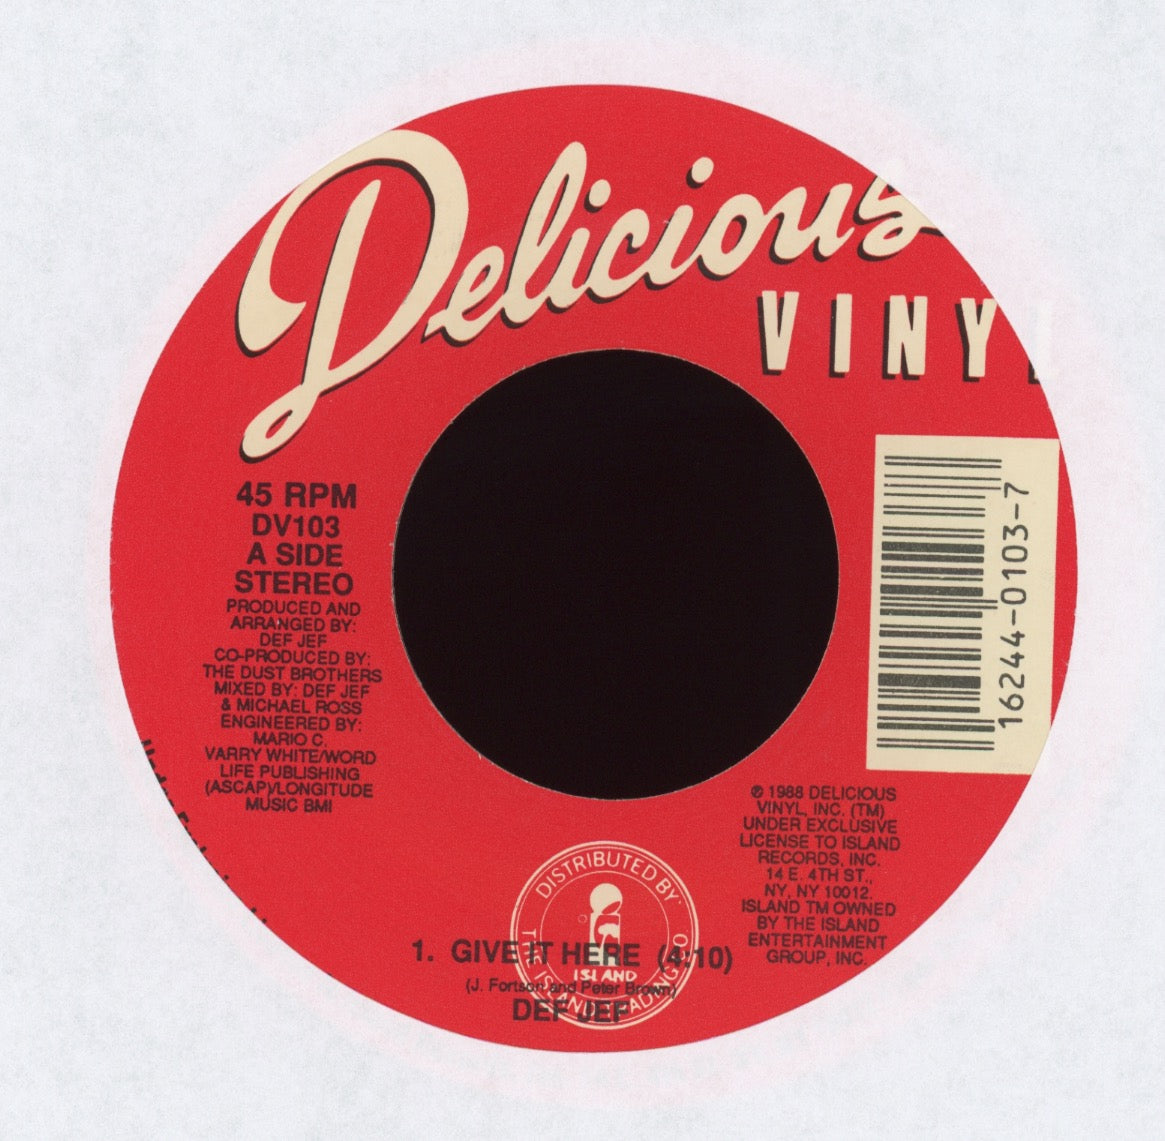 Def Jef - It Here on Vinyl Plaid Room